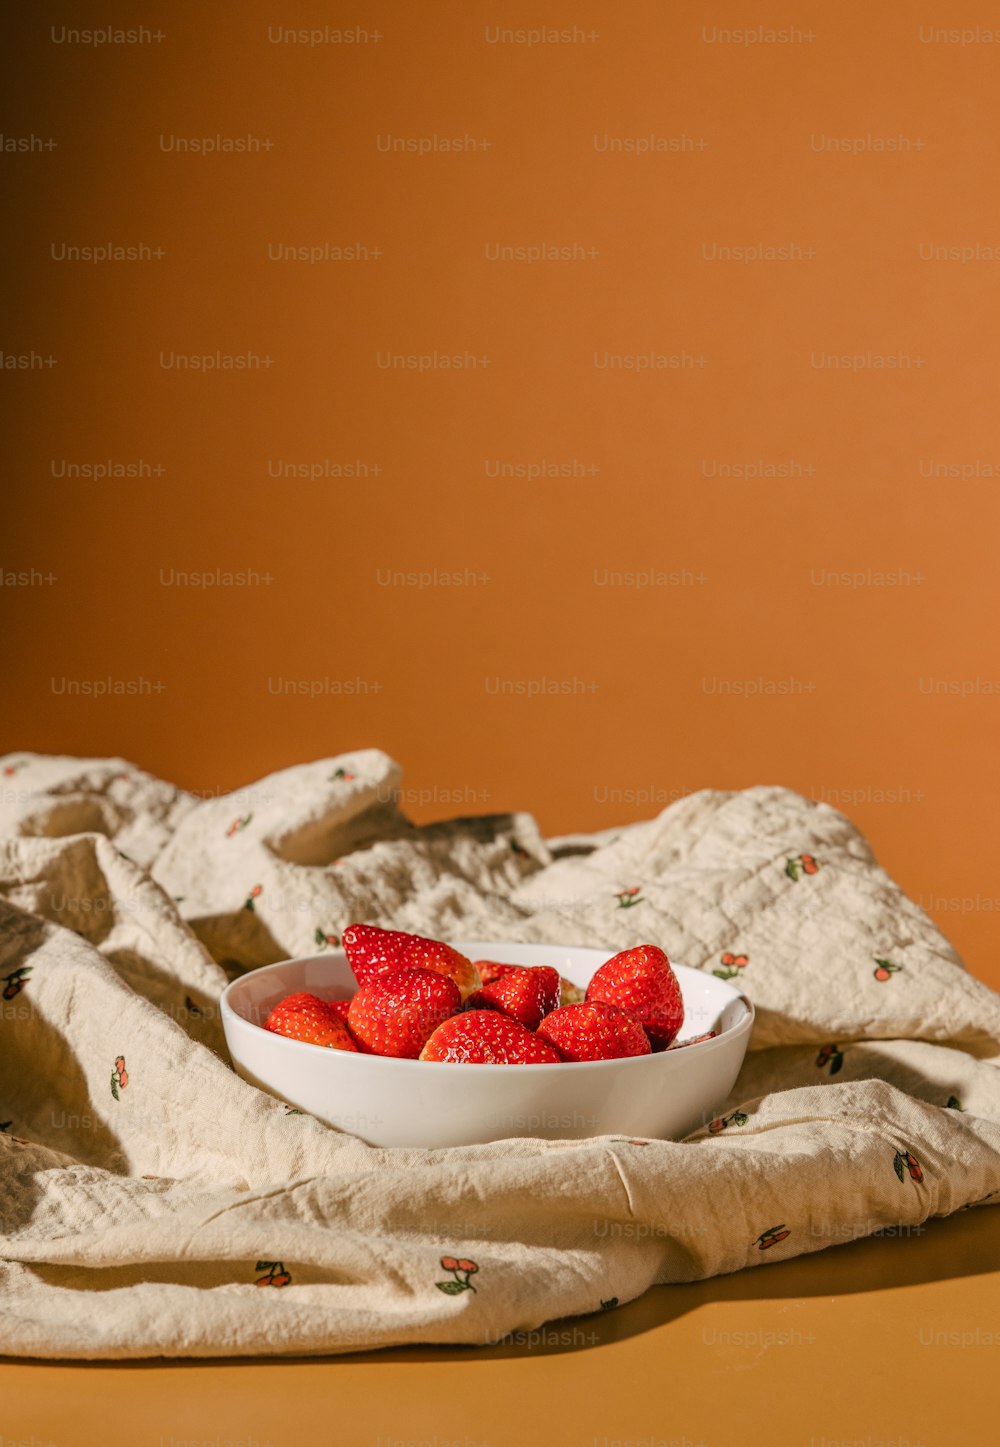 Un tazón de fresas está sentado sobre una toalla